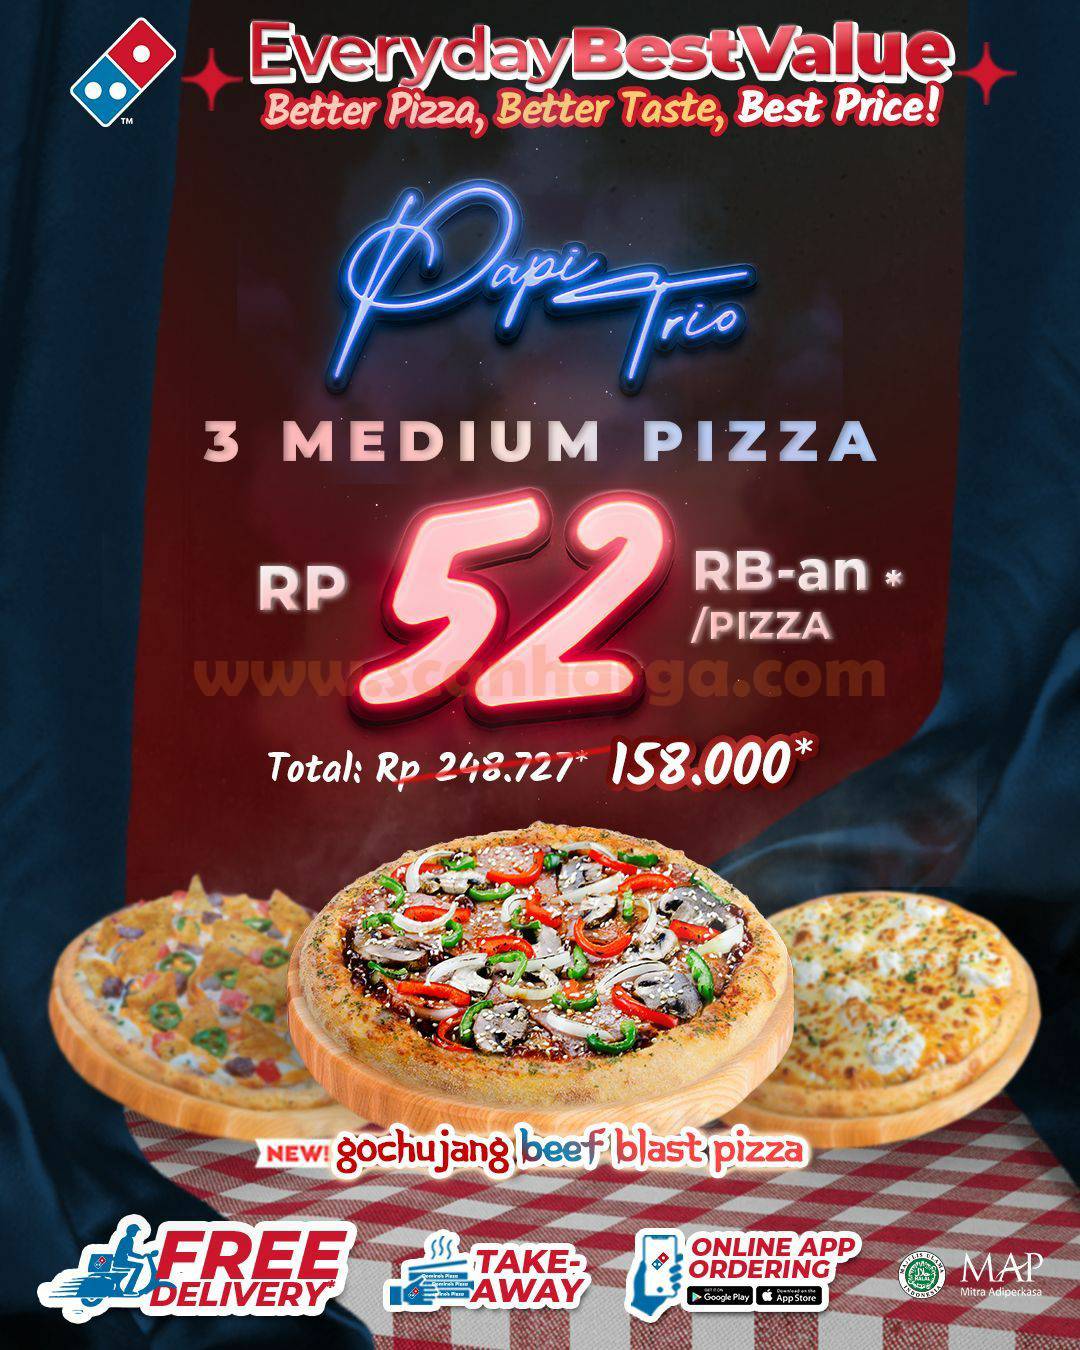 DOMINO'S PIZZA Promo PAPI TRIO - Beli 3 Pizza hanya Rp 52Ribuan*